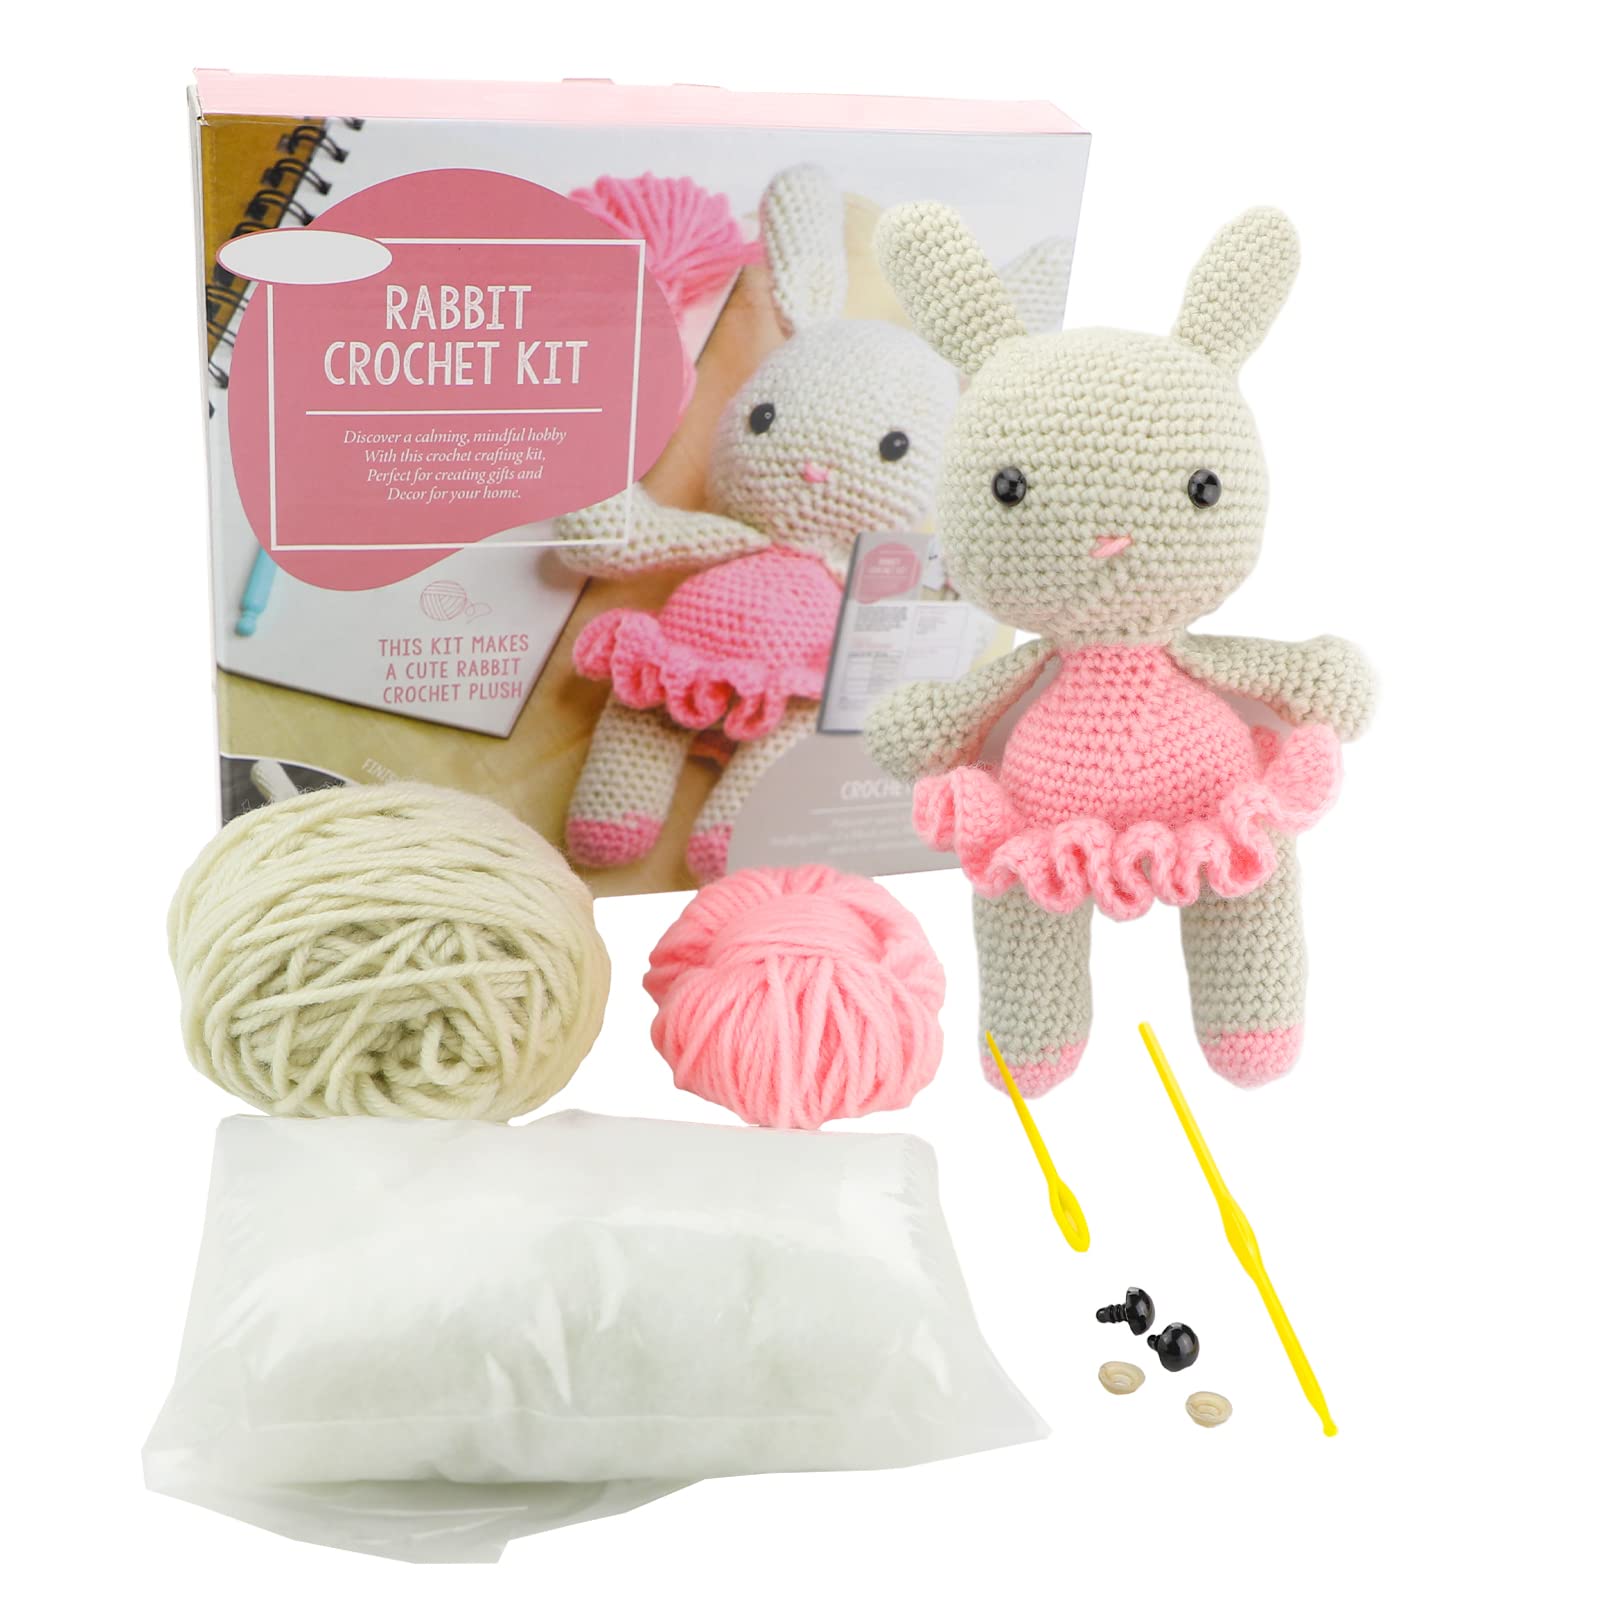 vidabita Beginner Crochet Kit - Rabbit Crochet Kit for Beginners